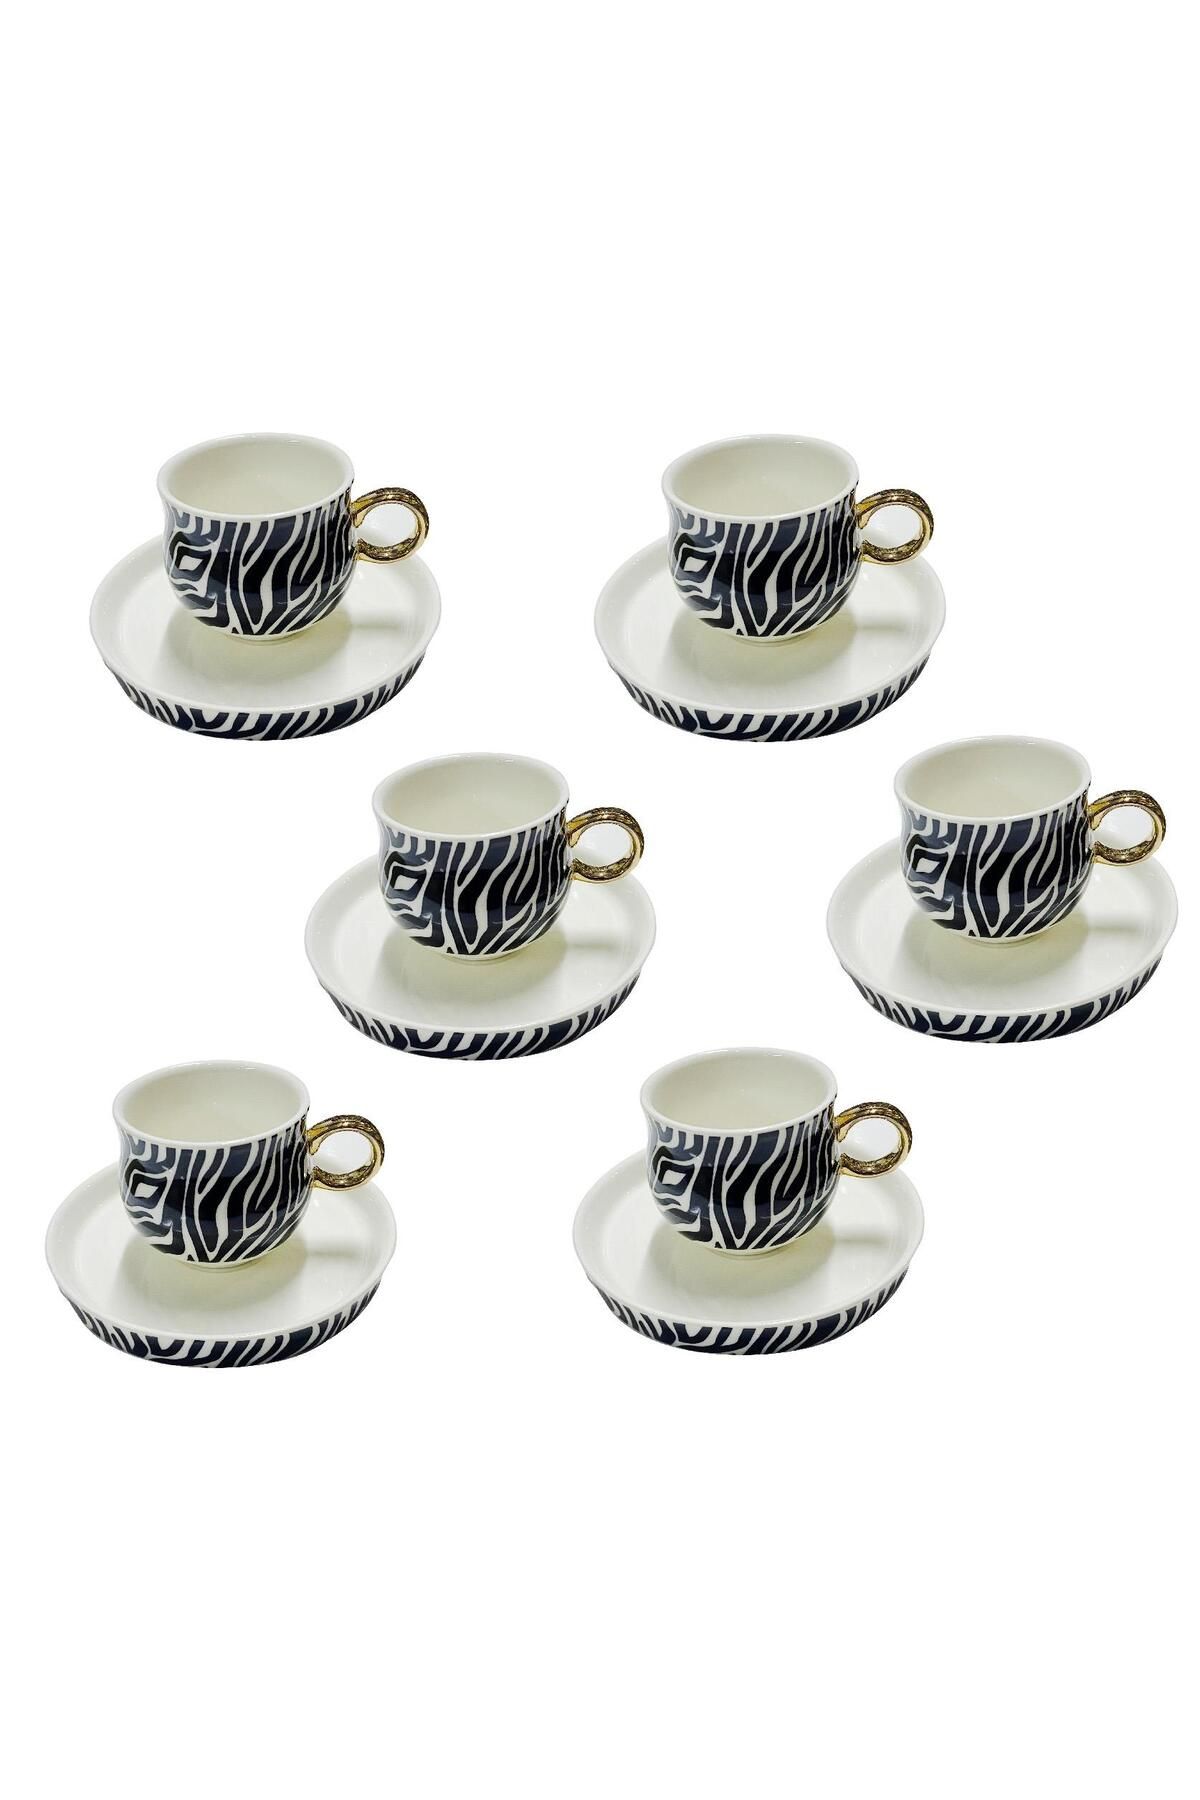 Schafer Porselen Kahve Fincan Takımı 6 Kişilik Siyah Beyaz Zebra Desenli